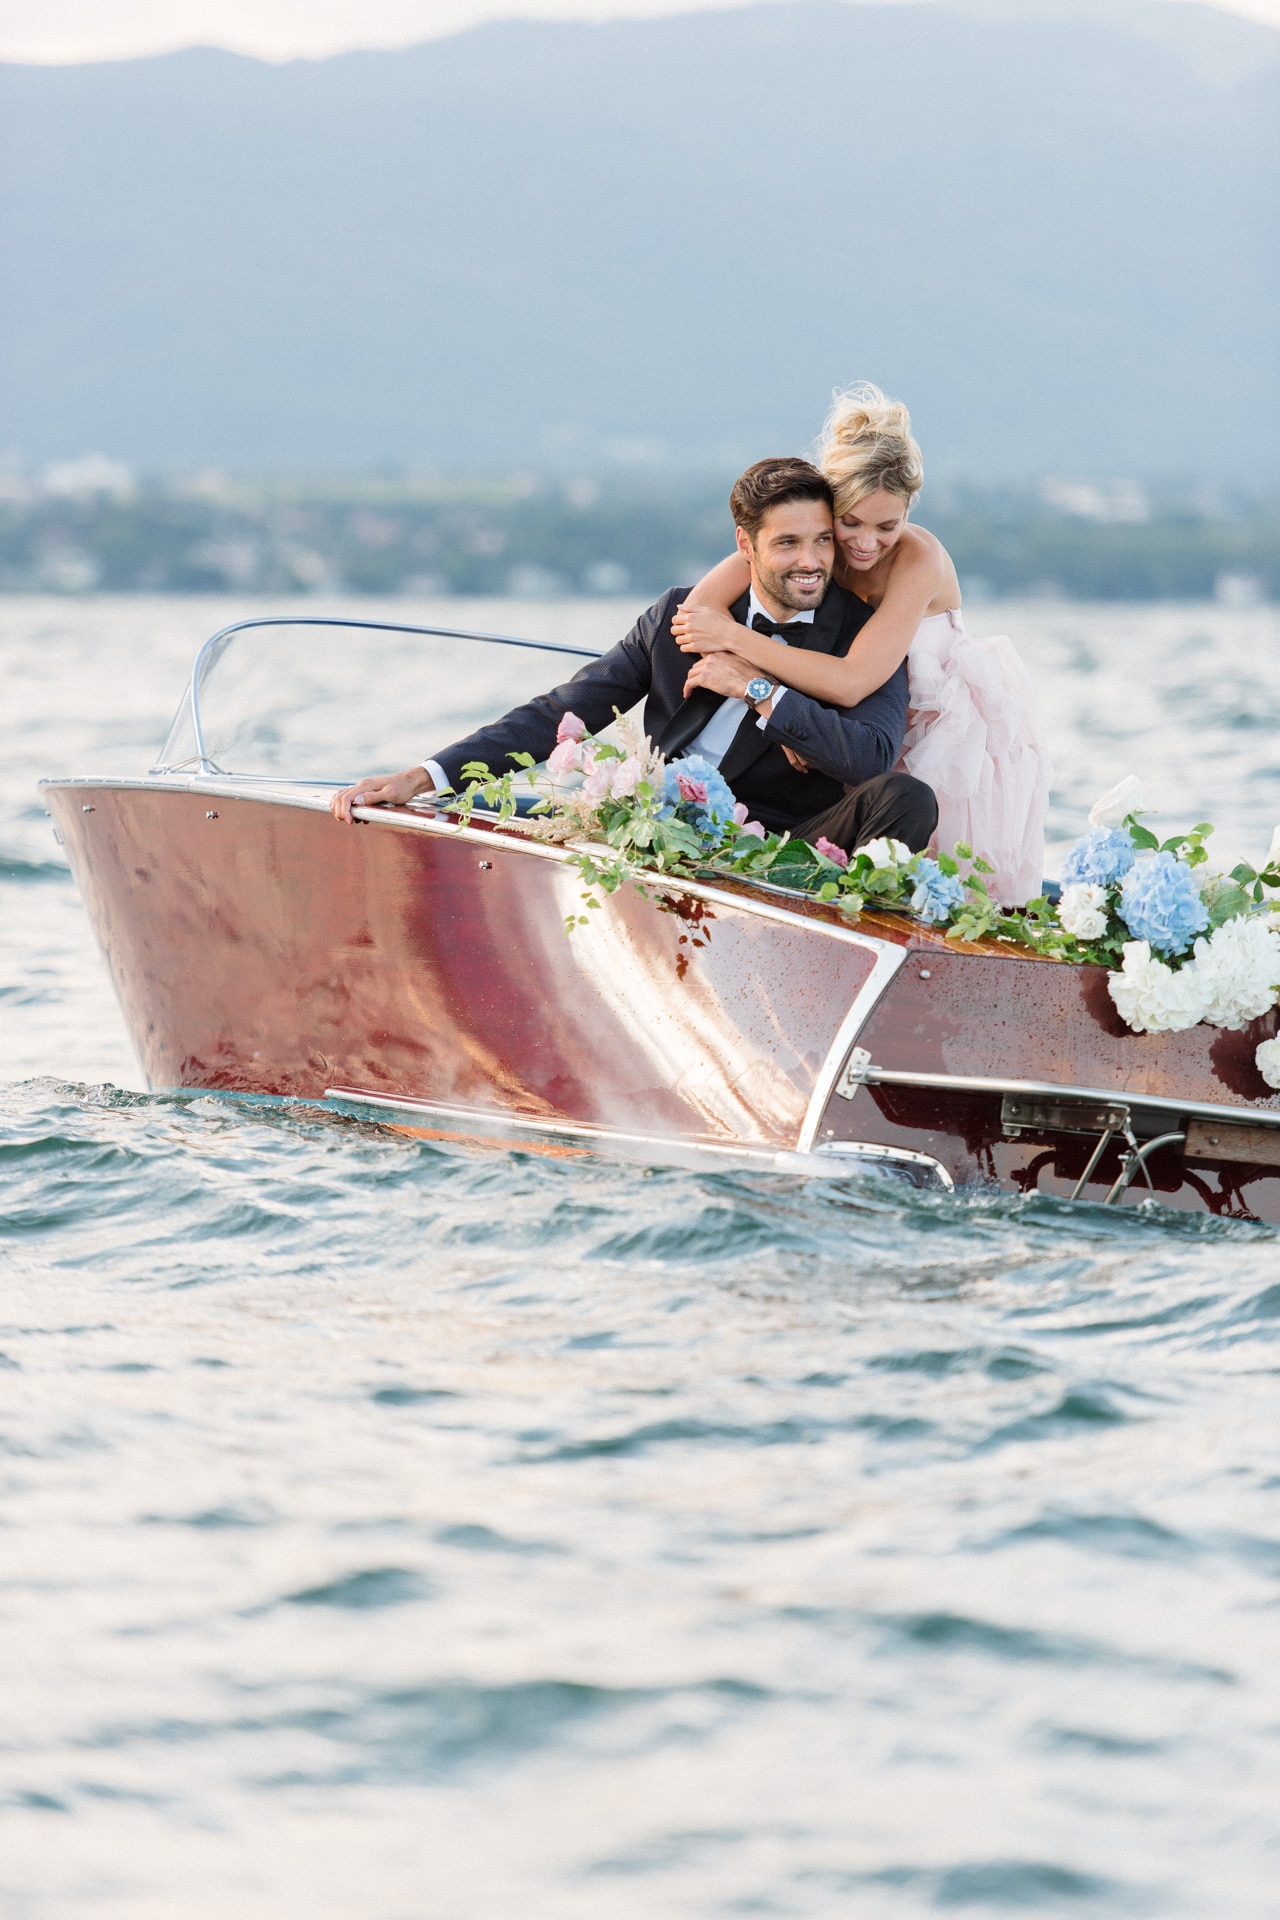 photographe de mariage, Genève, photographe Lausanne, portes des iris, mariage lac leman, bateau Leman, robe de mariée, wedding, photographe mariage provence